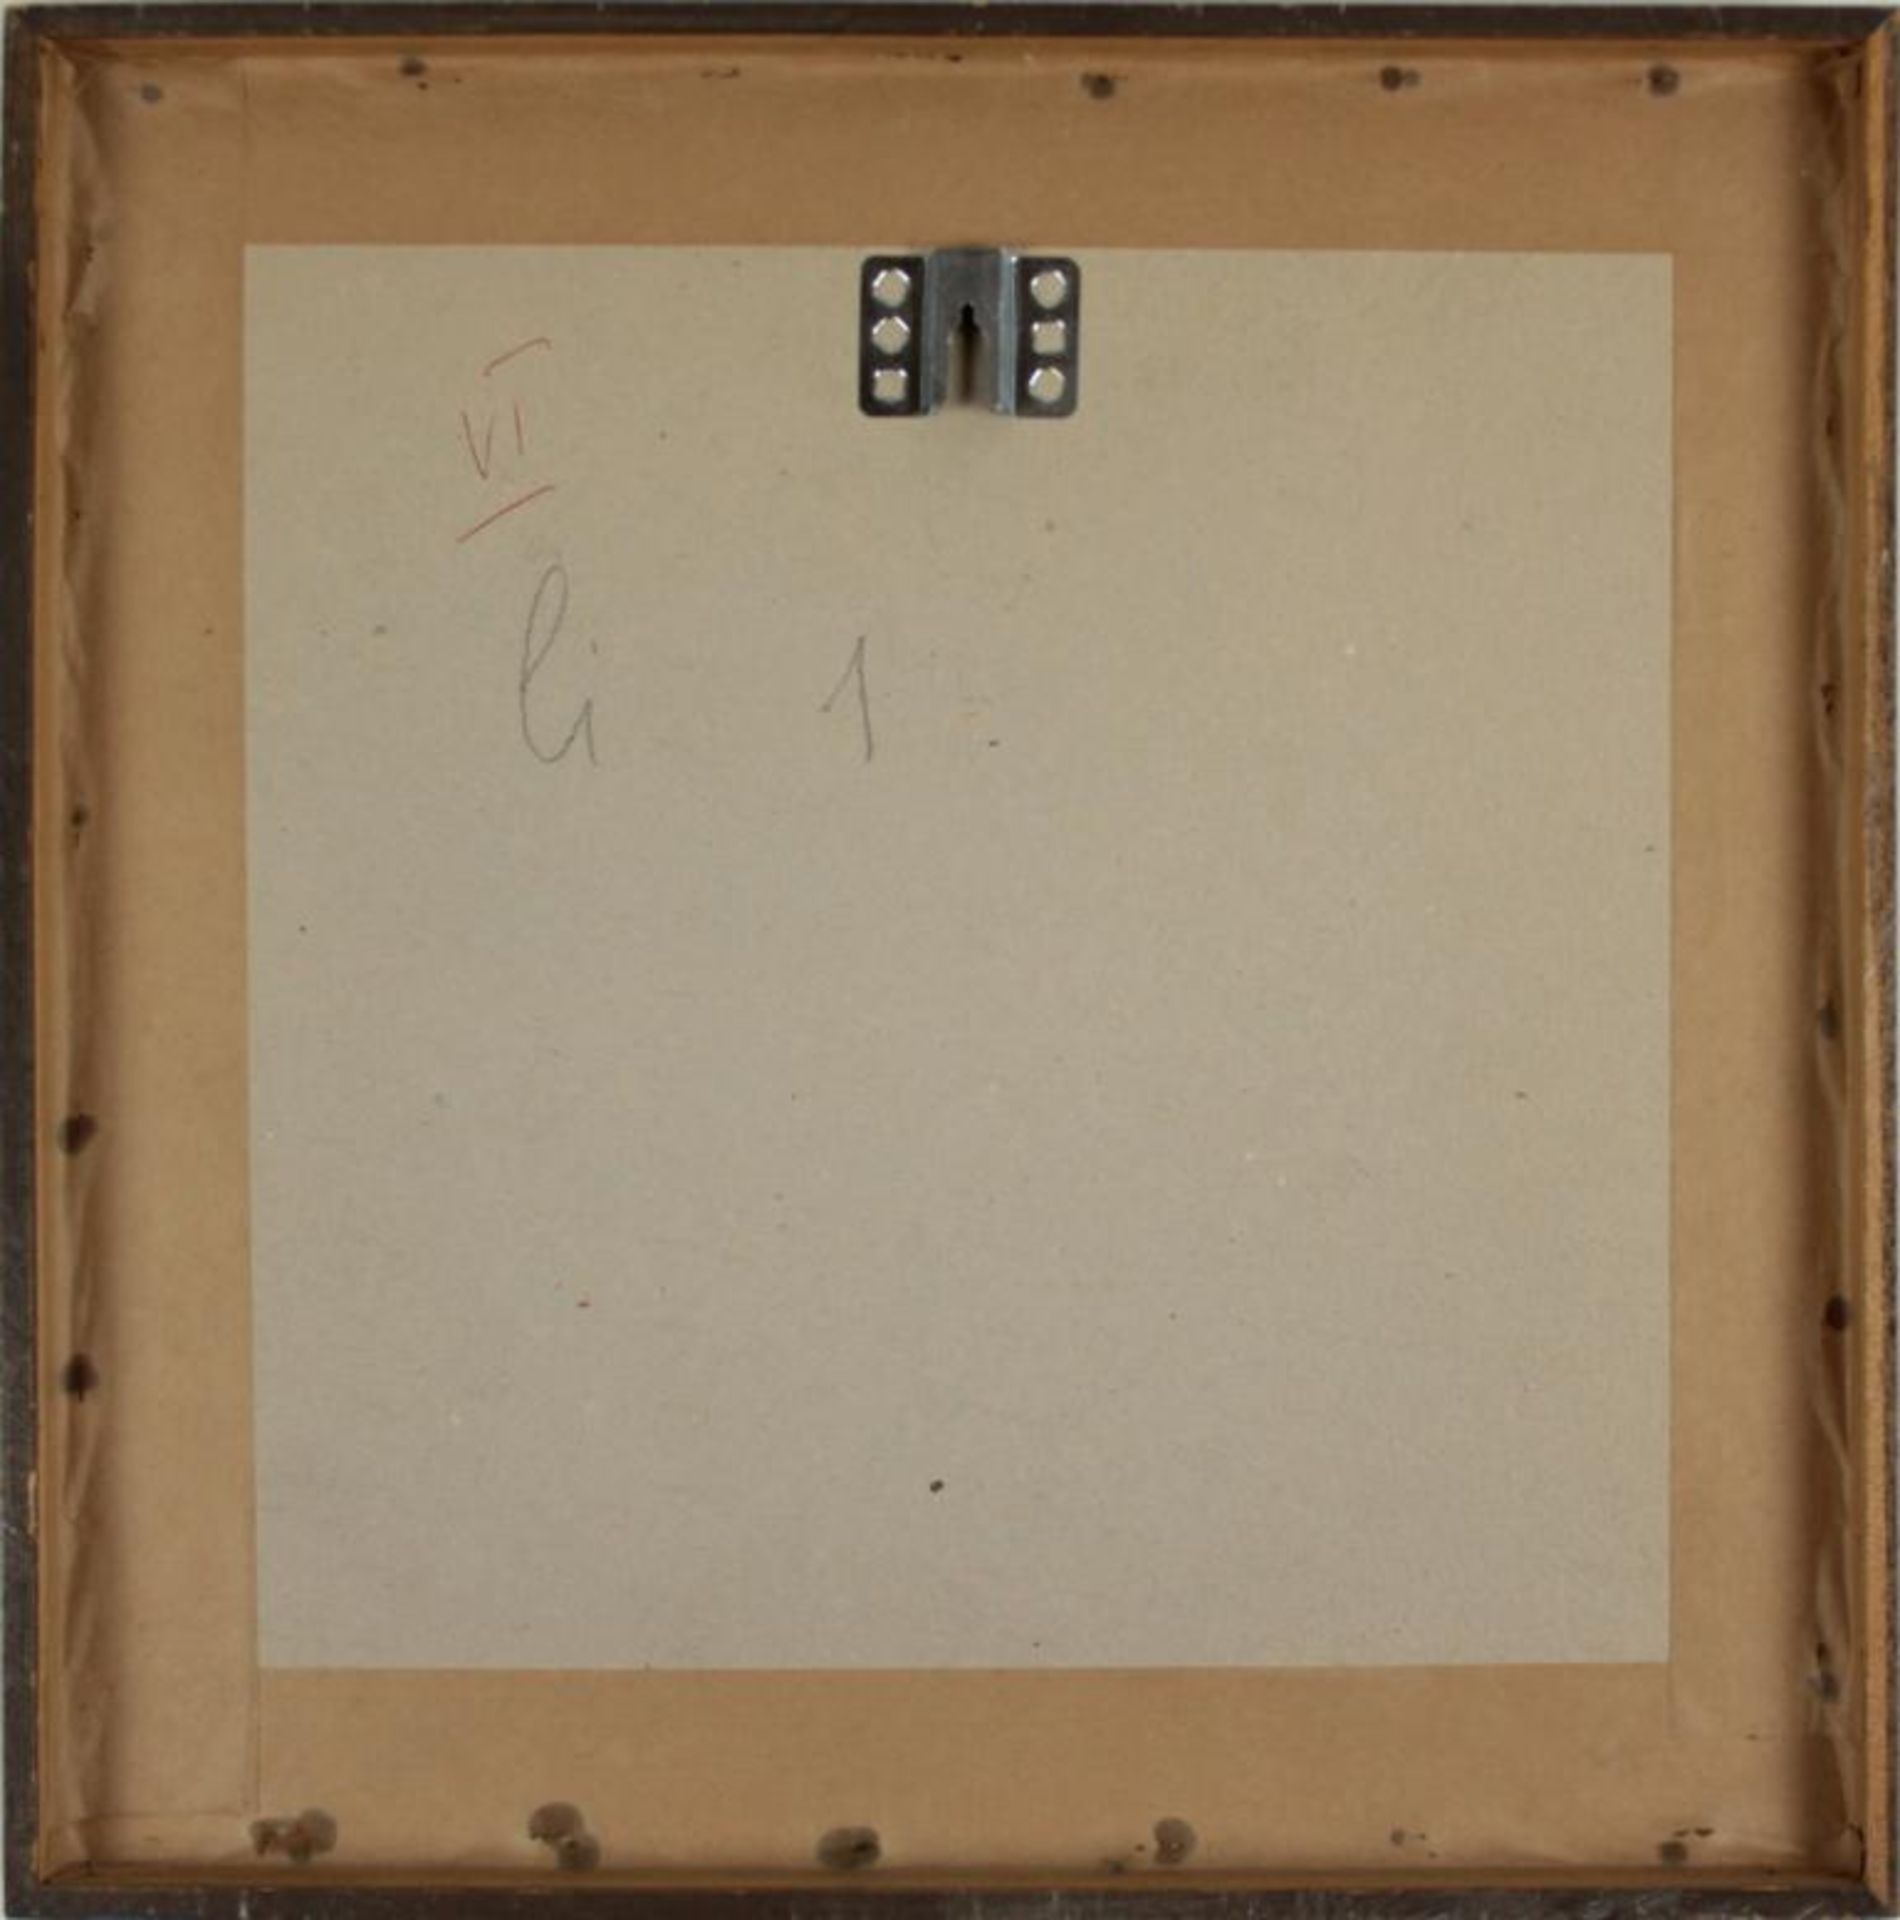  Albert Paris Gütersloh(1887- 1973)"Interieur"1971Mischtechnik auf Papier; signiert, datiert und bet - Bild 4 aus 4